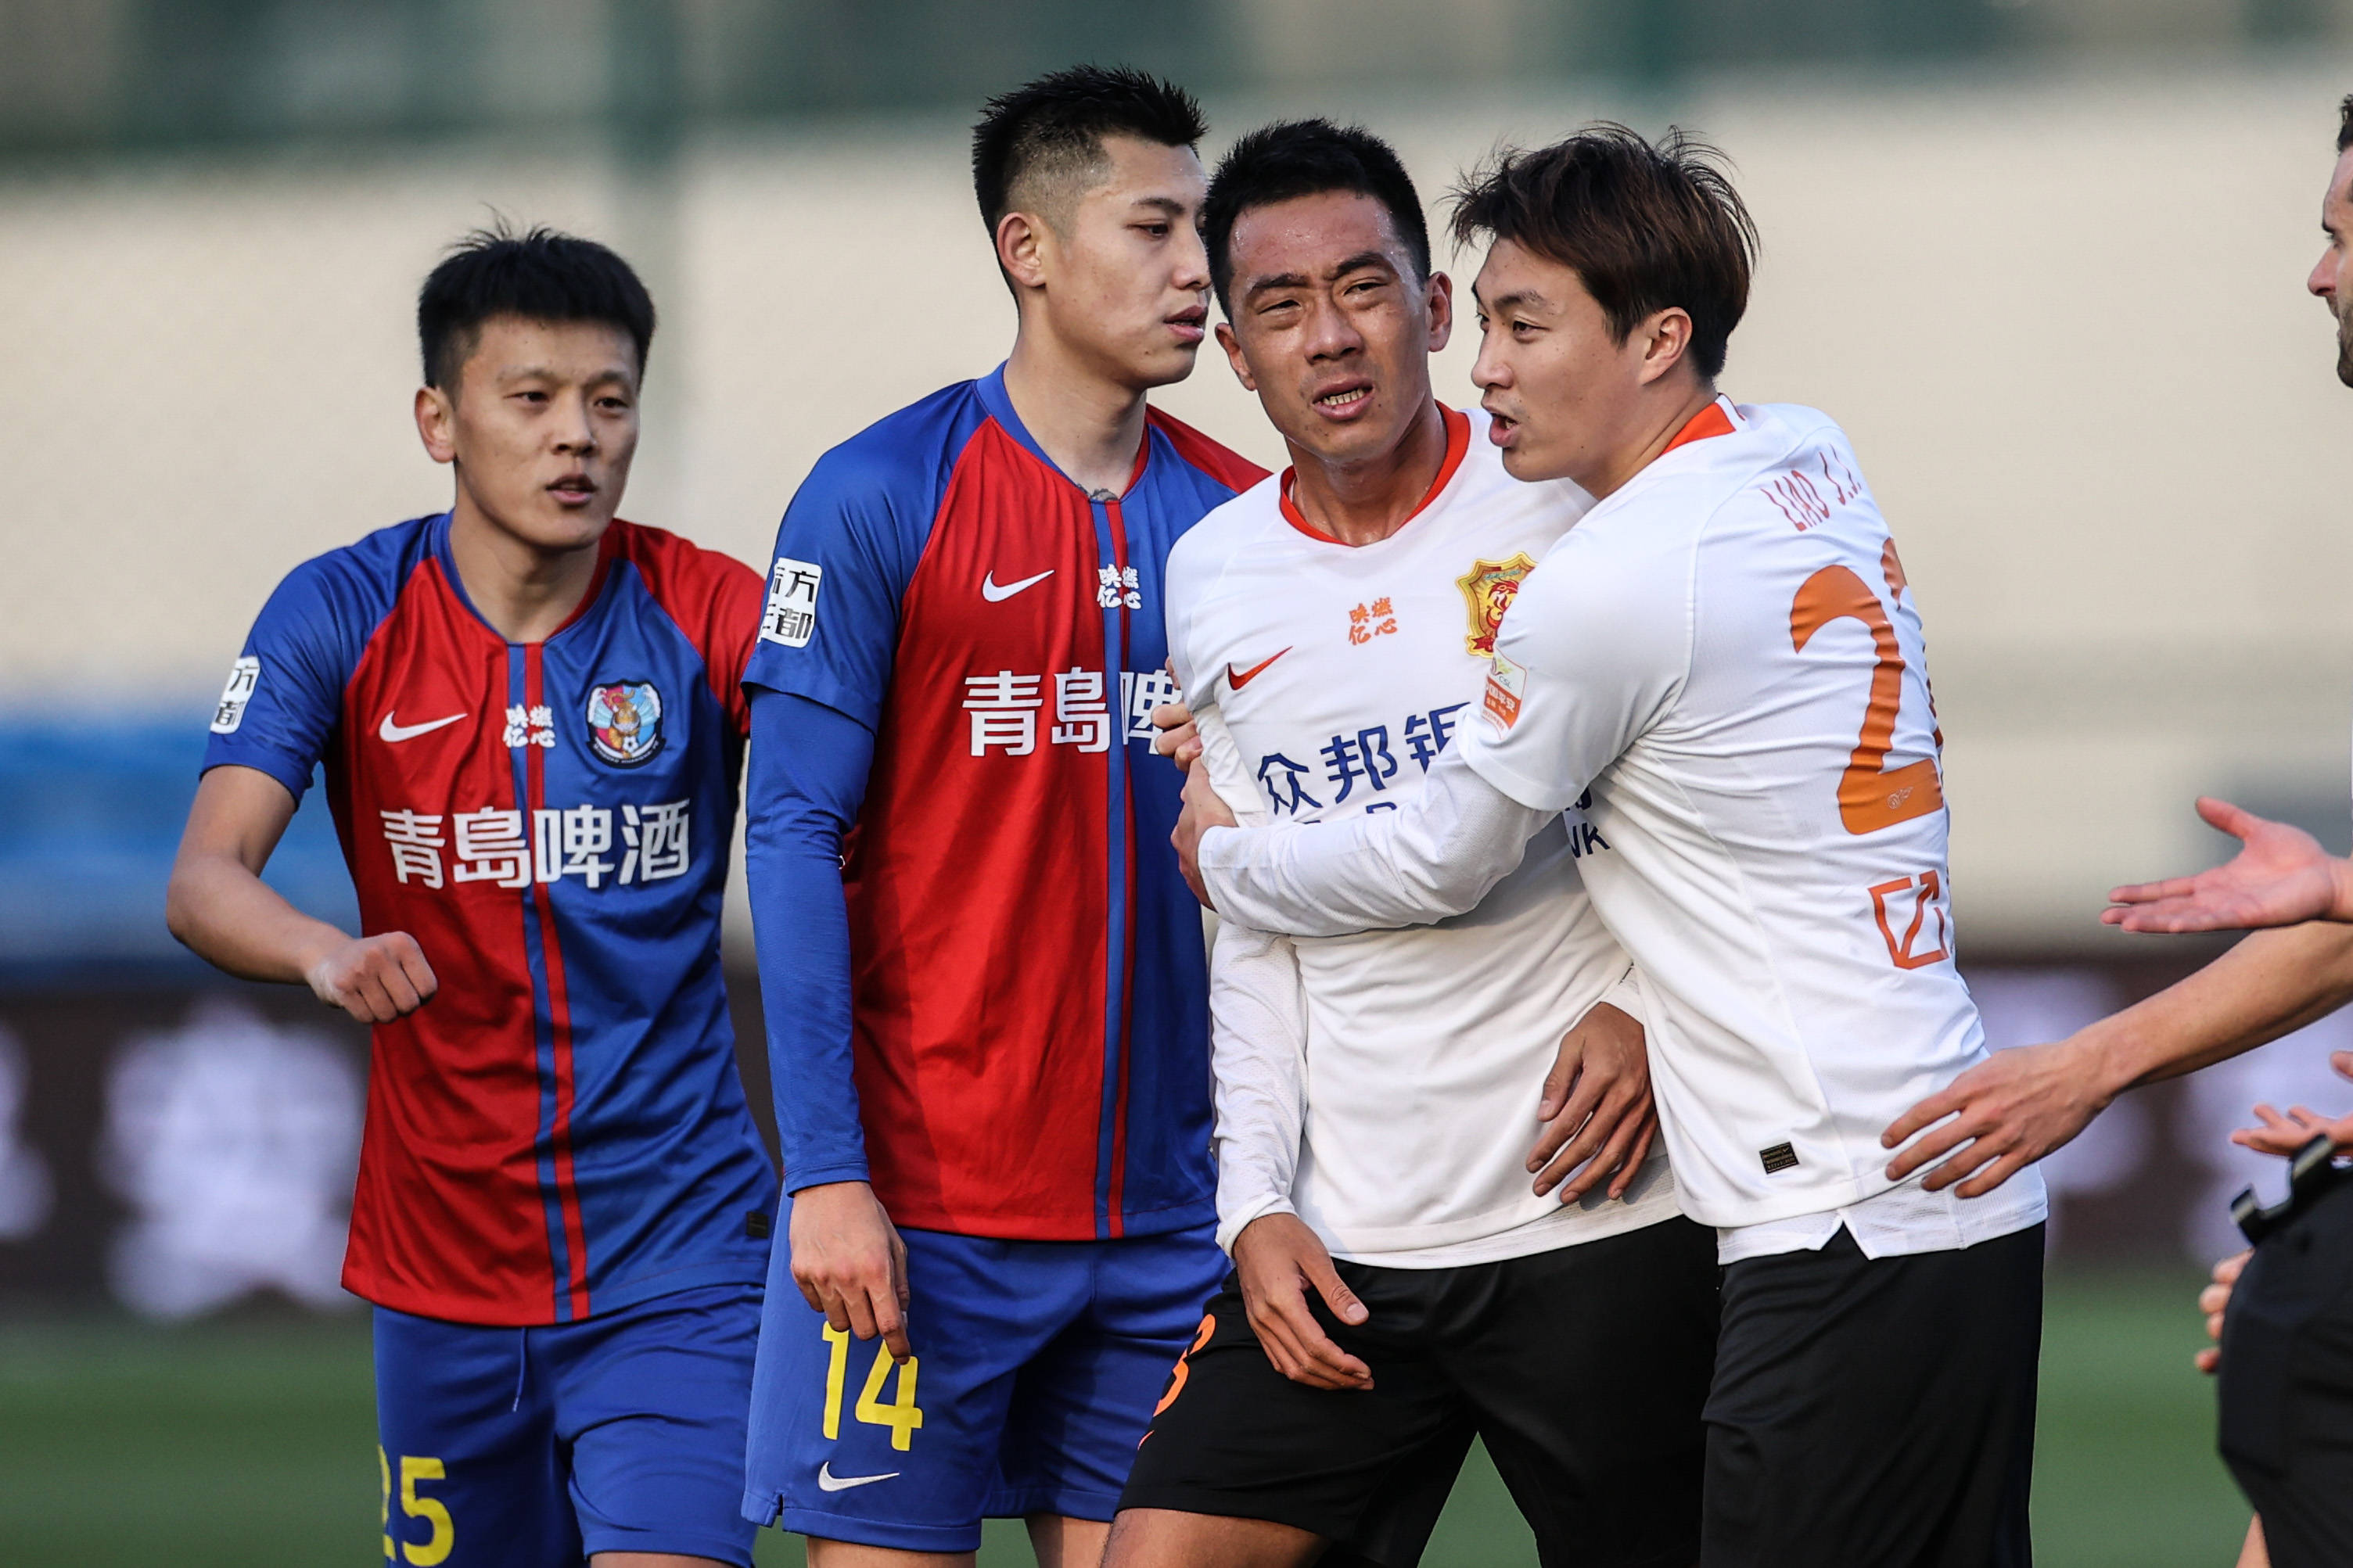 青岛足球俱乐部正式致函市足球运动管理中心退出中国职业足球联赛(图)